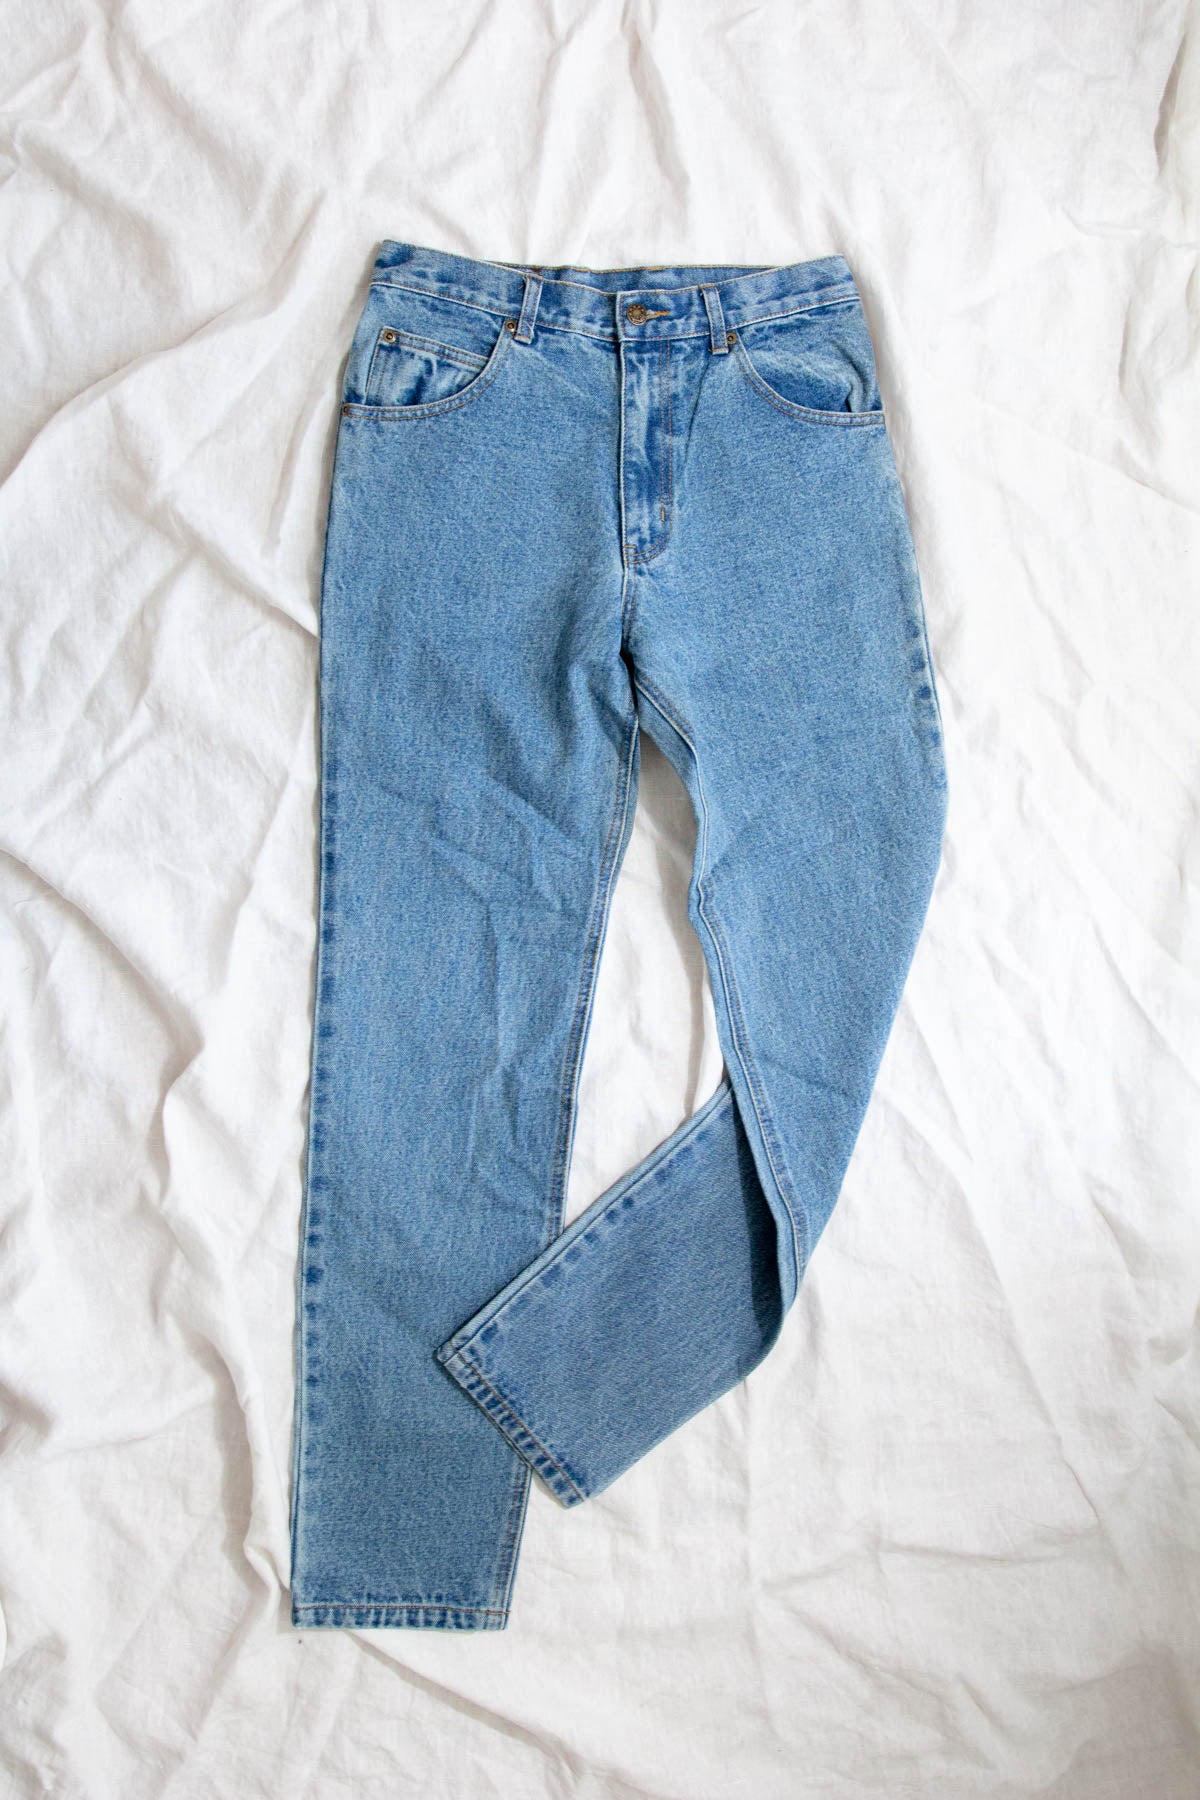 Vintage Deadstock Jeans; Light Blue Tapered